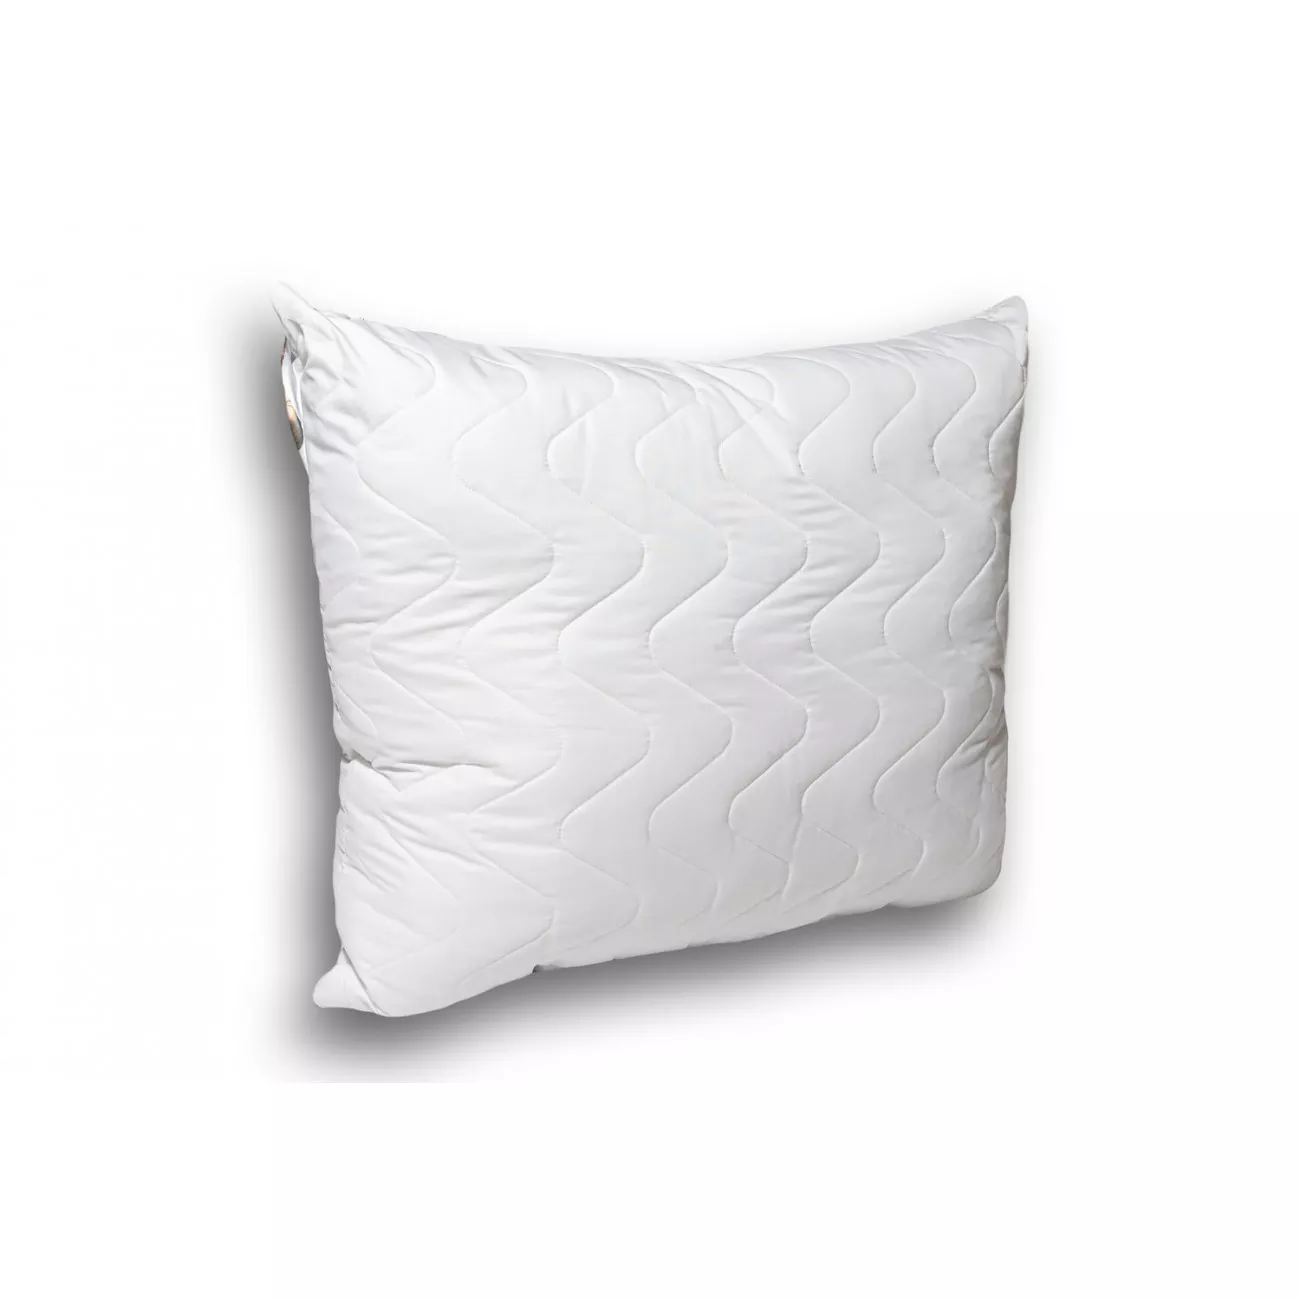 Biała poduszka antyalergiczna HIT 70x80 do spania z mikrofibry dla alergików hipoalergiczna - 1